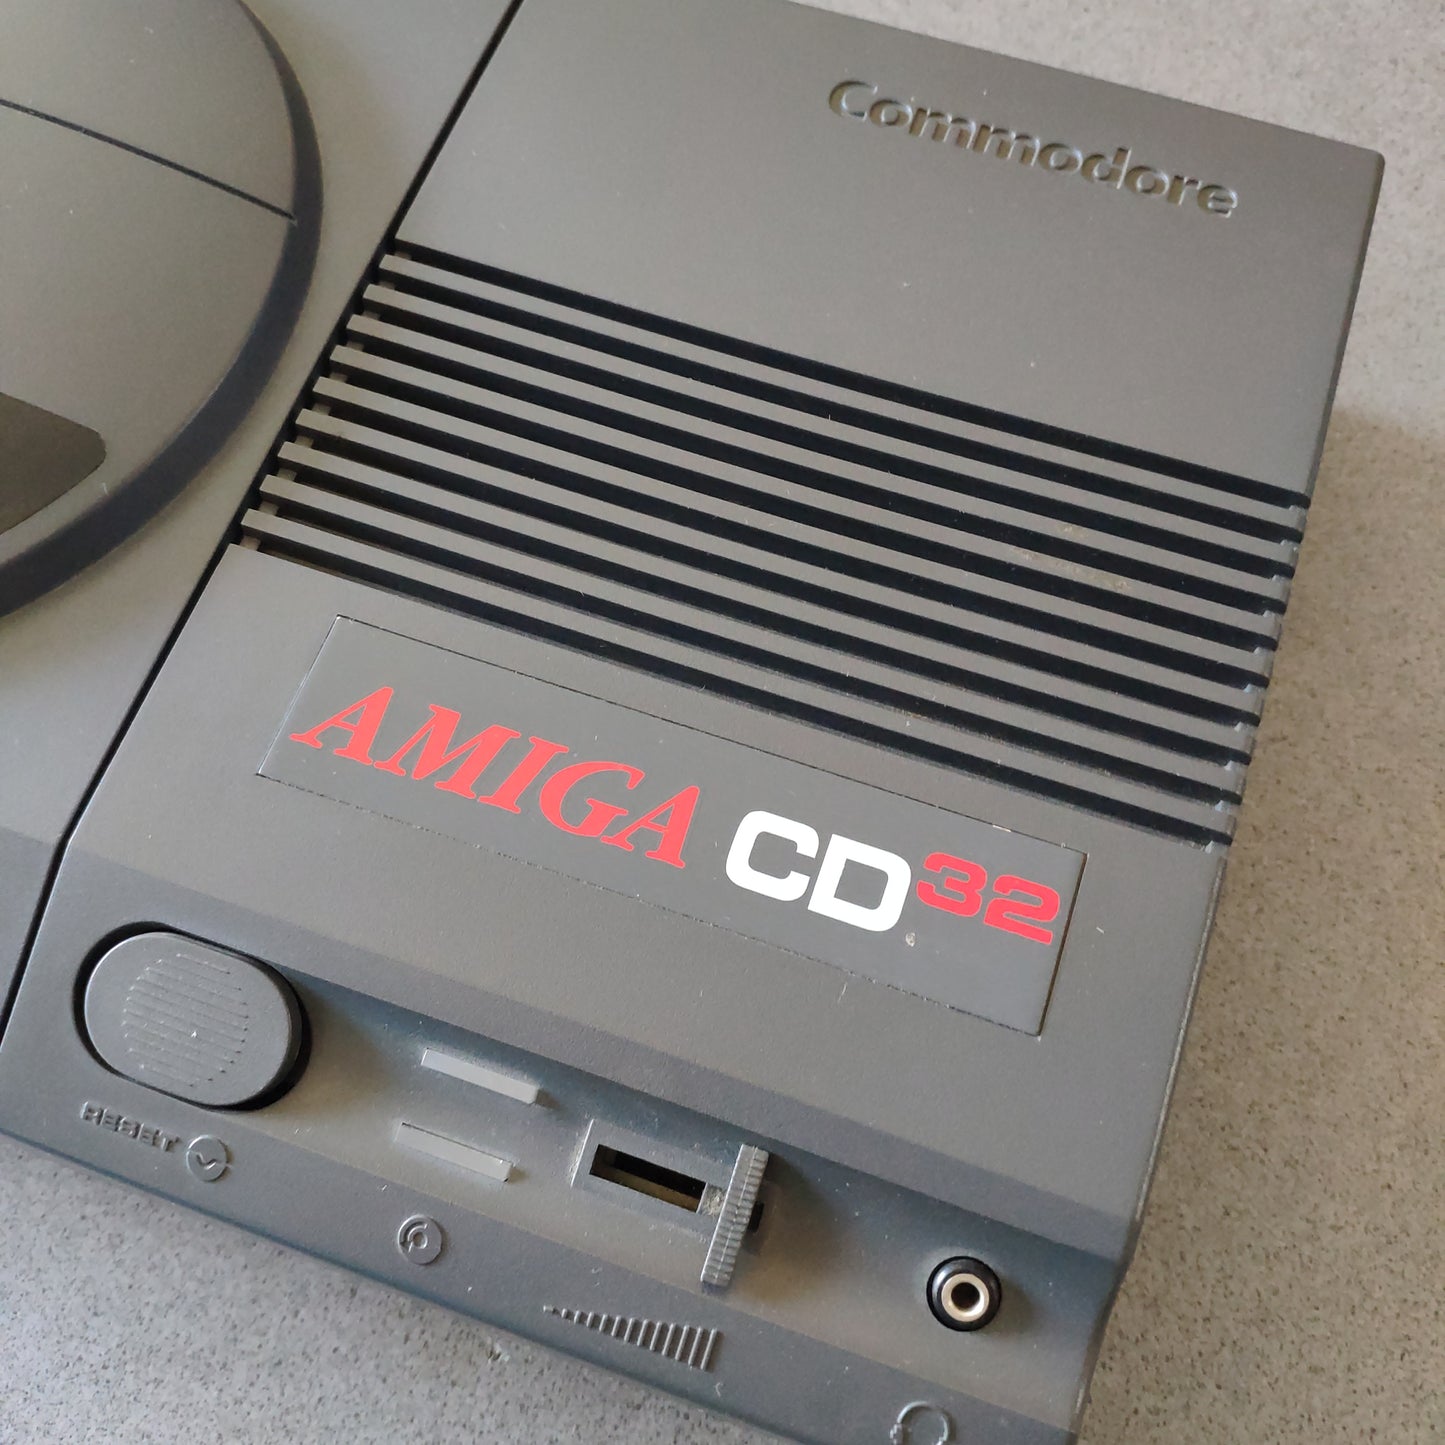 Commodore Amiga Cd 32